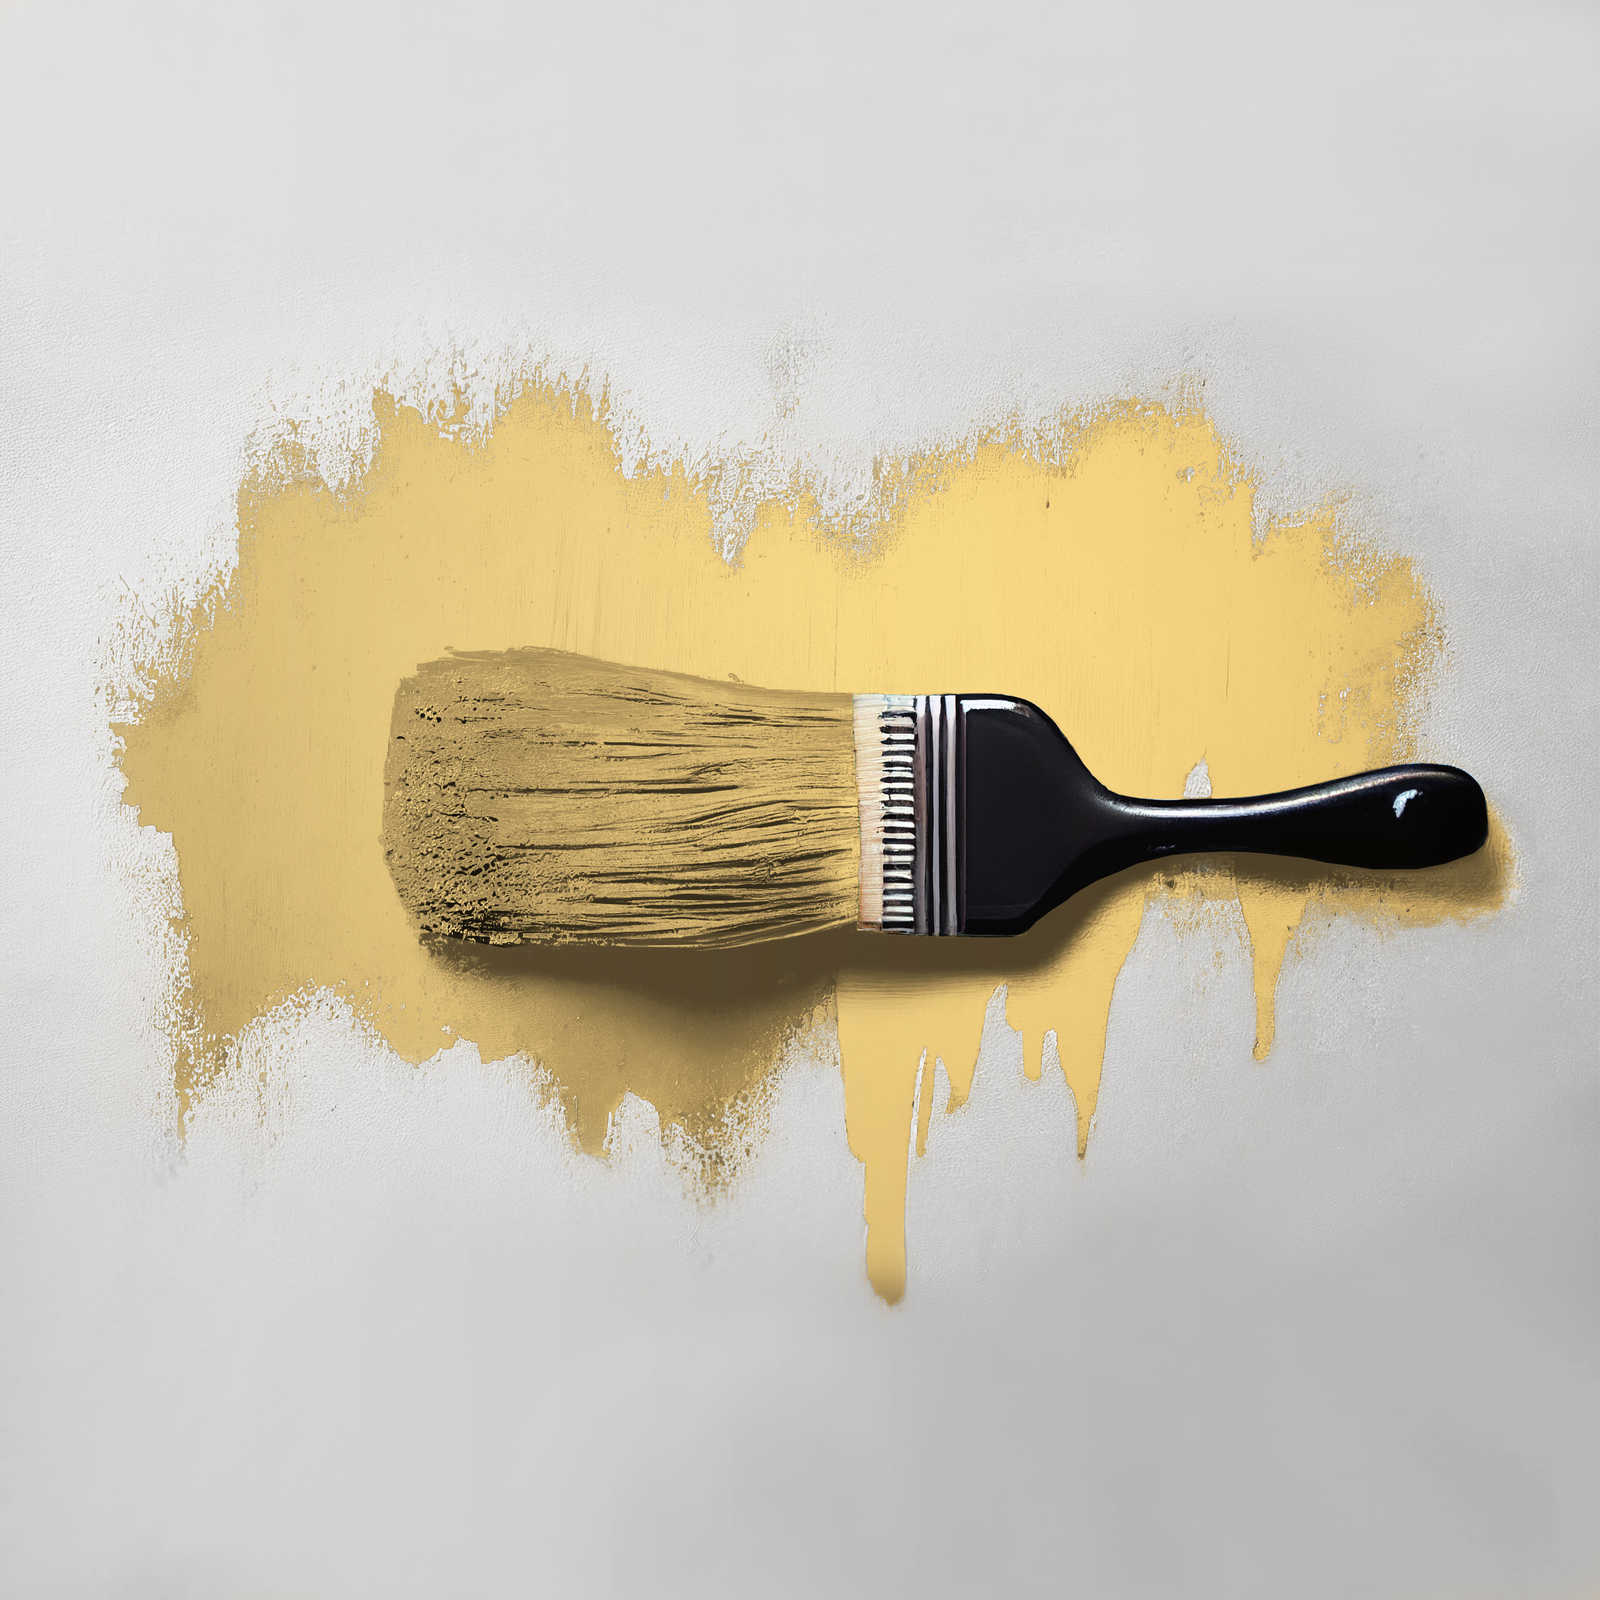             Pittura murale TCK5005 »Playful Pineapple« in giallo amichevole – 5,0 litri
        